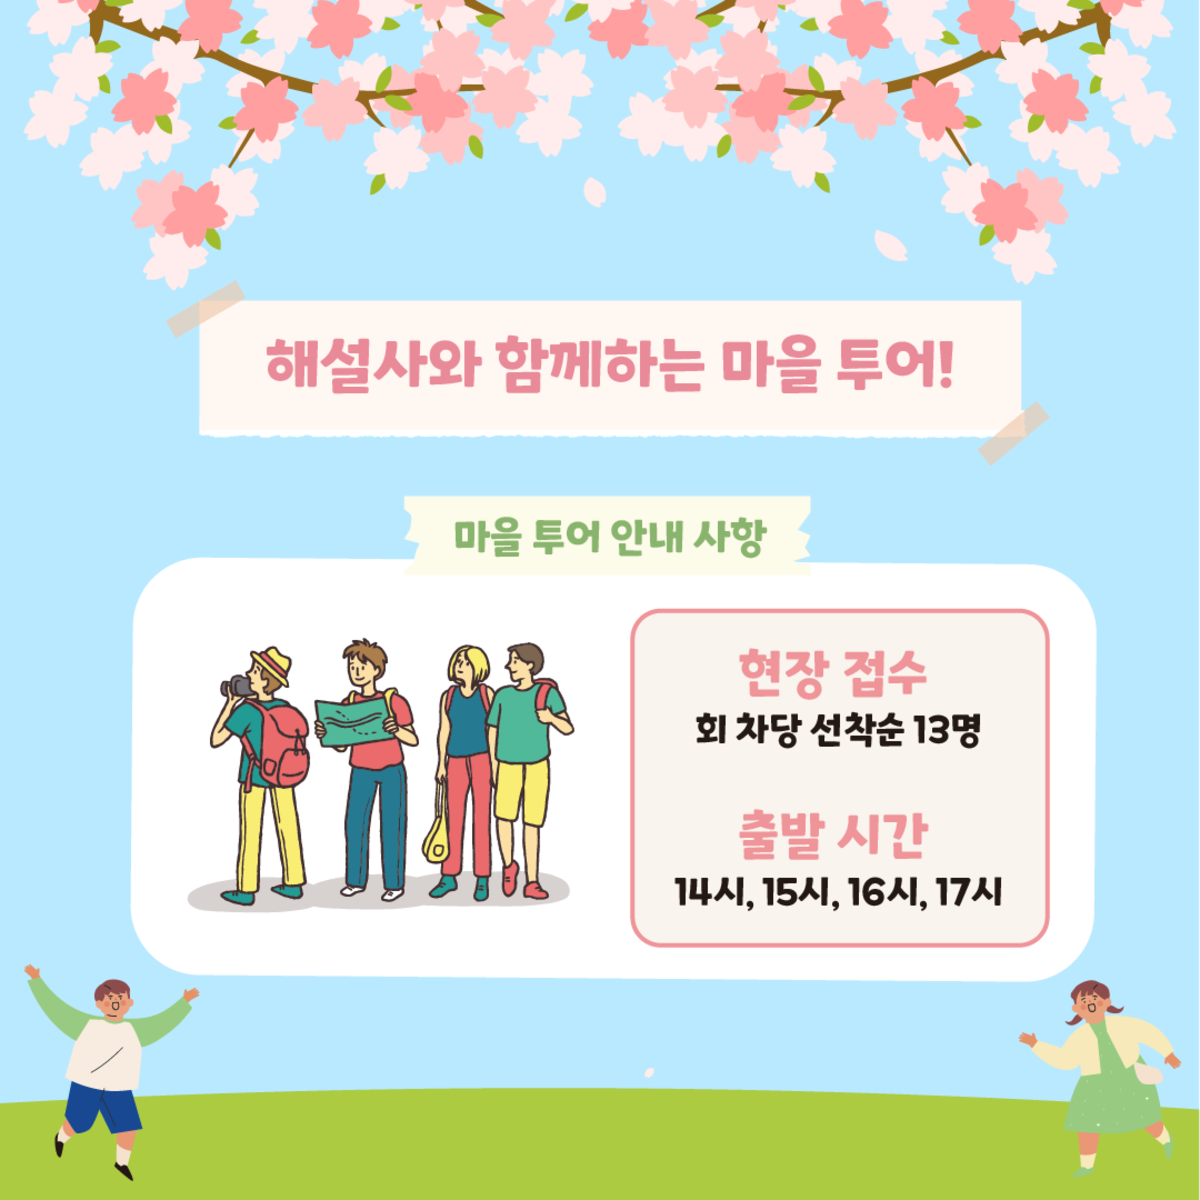 승월마을 벚꽃축제